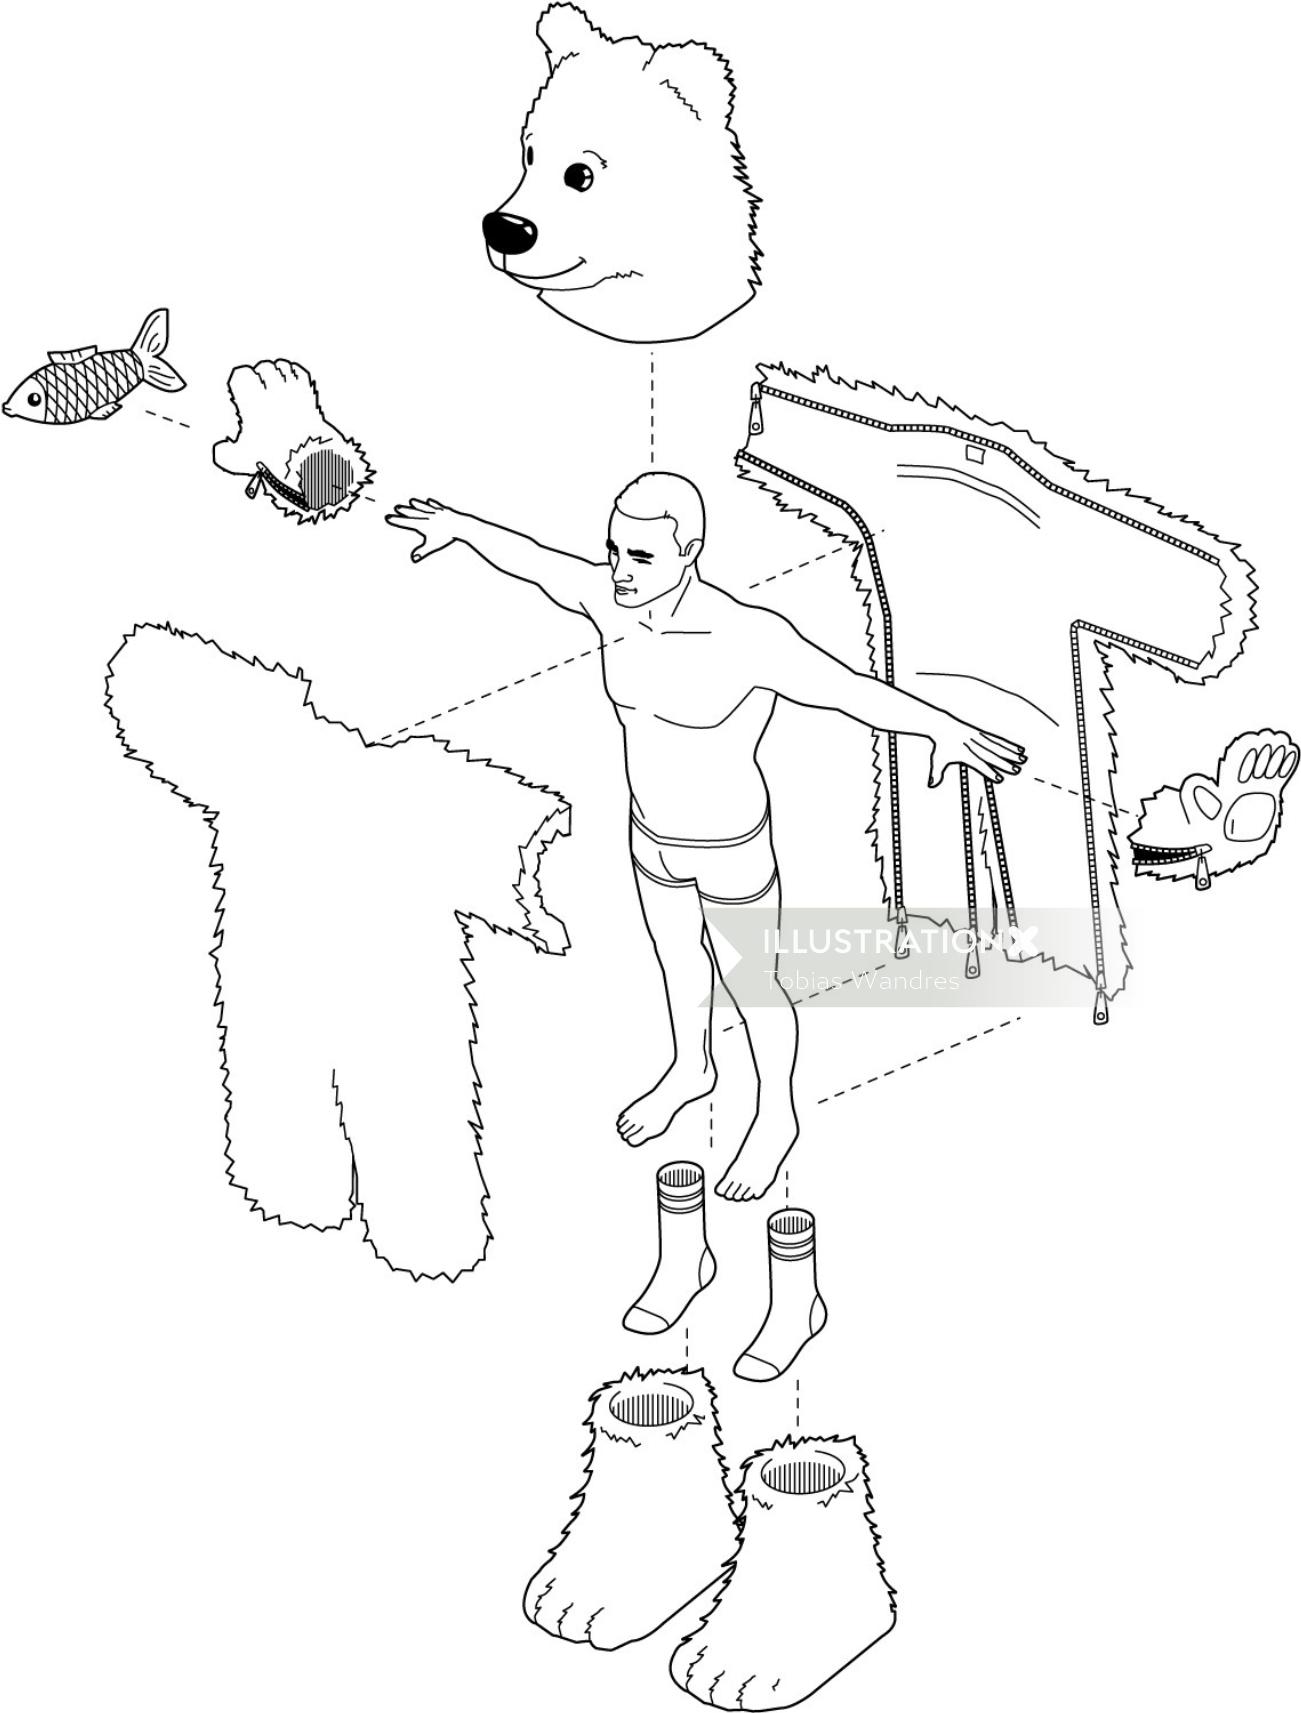 Uma ilustração de exercitar o homem